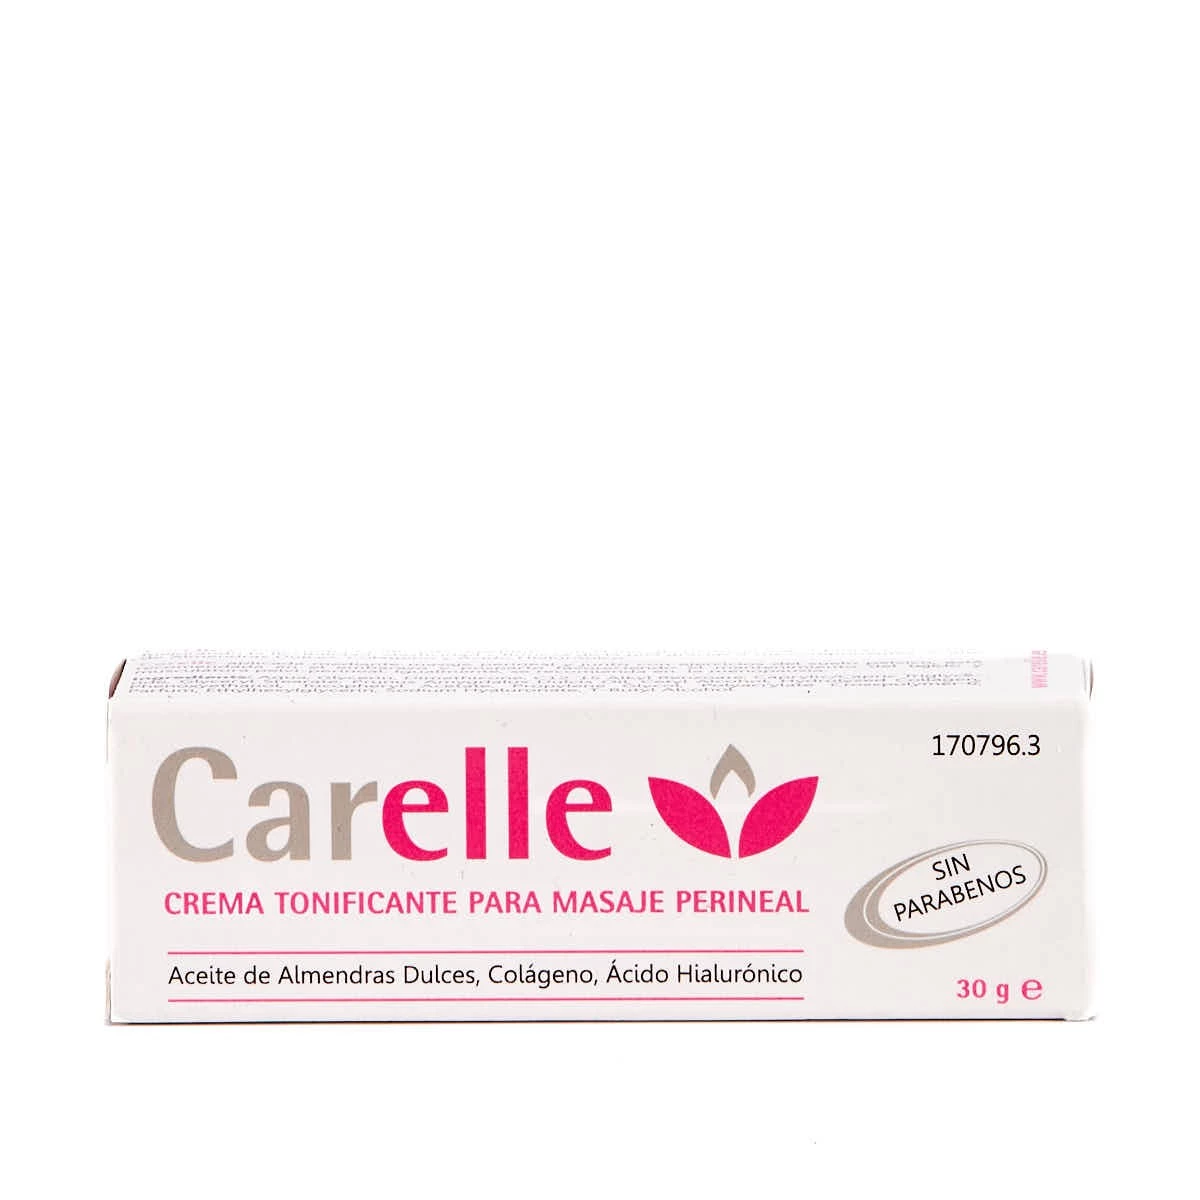 Carelle Crema Tonificante Masaje Perineal, 30g.